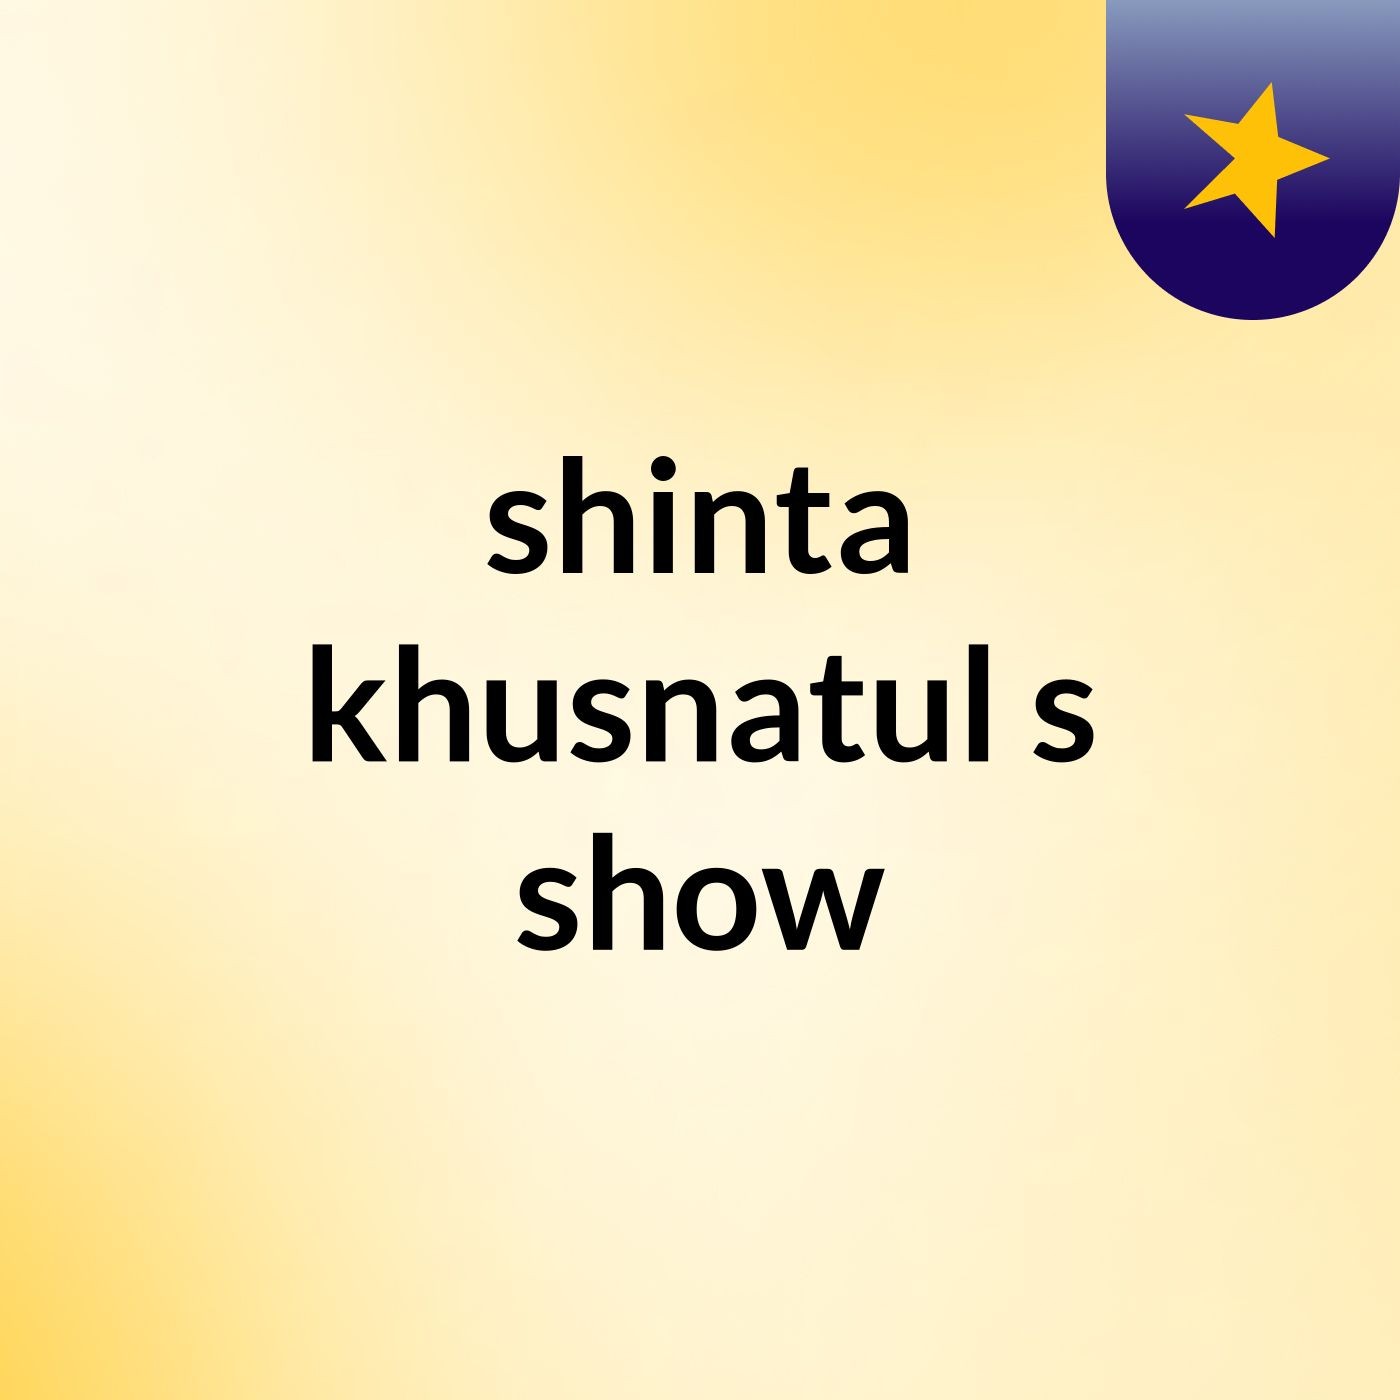 shinta khusnatul's show